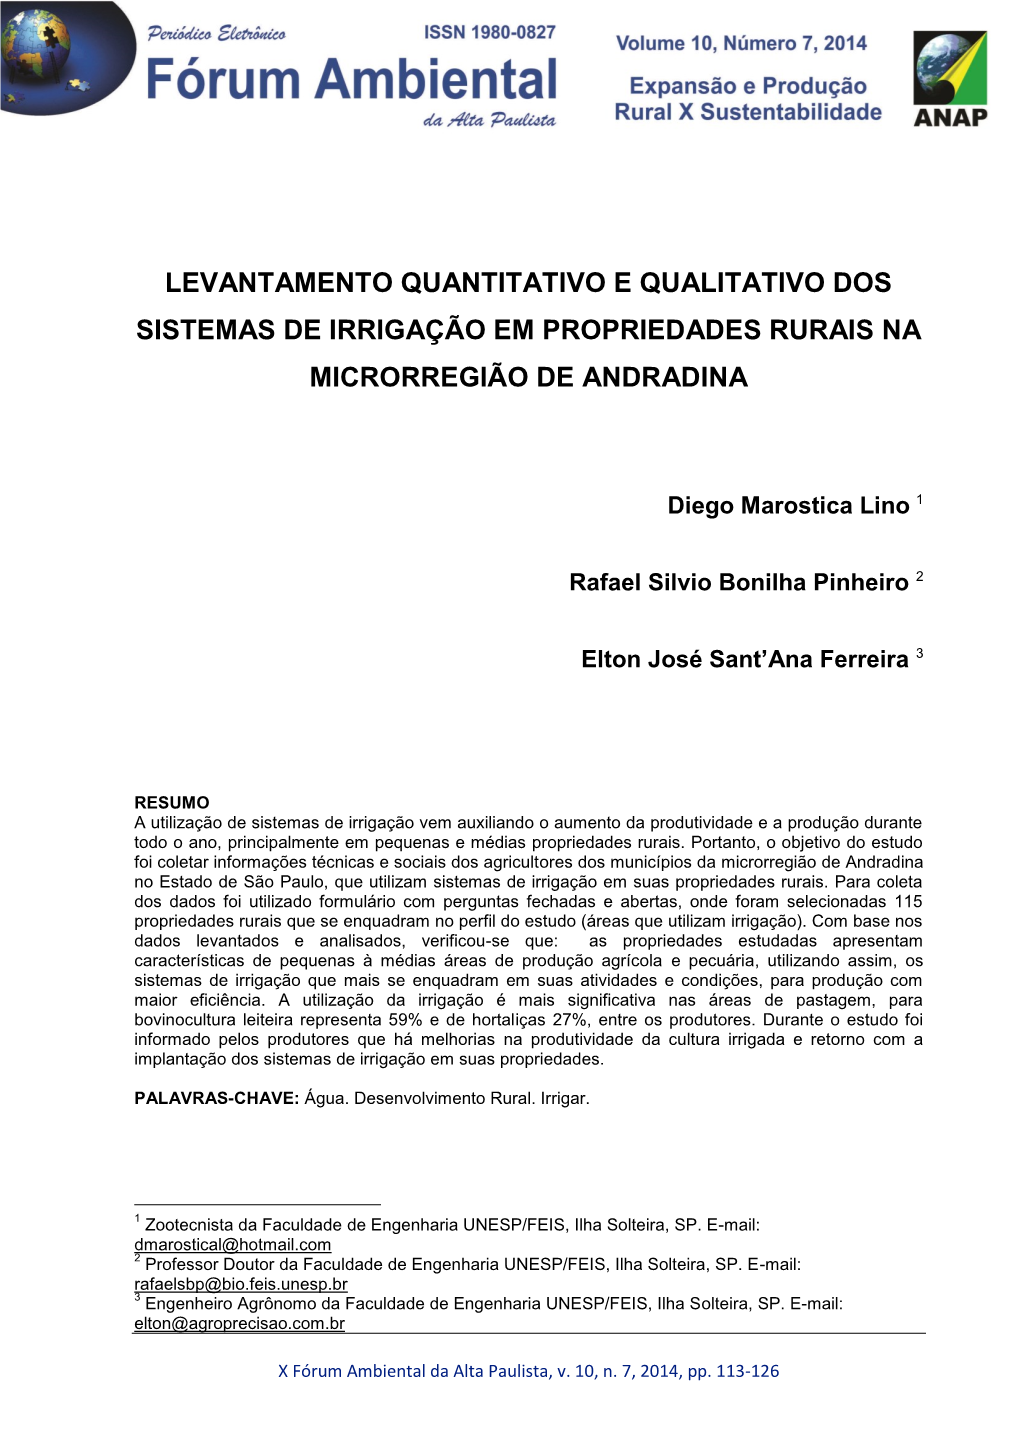 Levantamento Quantitativo E Qualitativo Dos Sistemas De Irrigação Em Propriedades Rurais Na Microrregião De Andradina